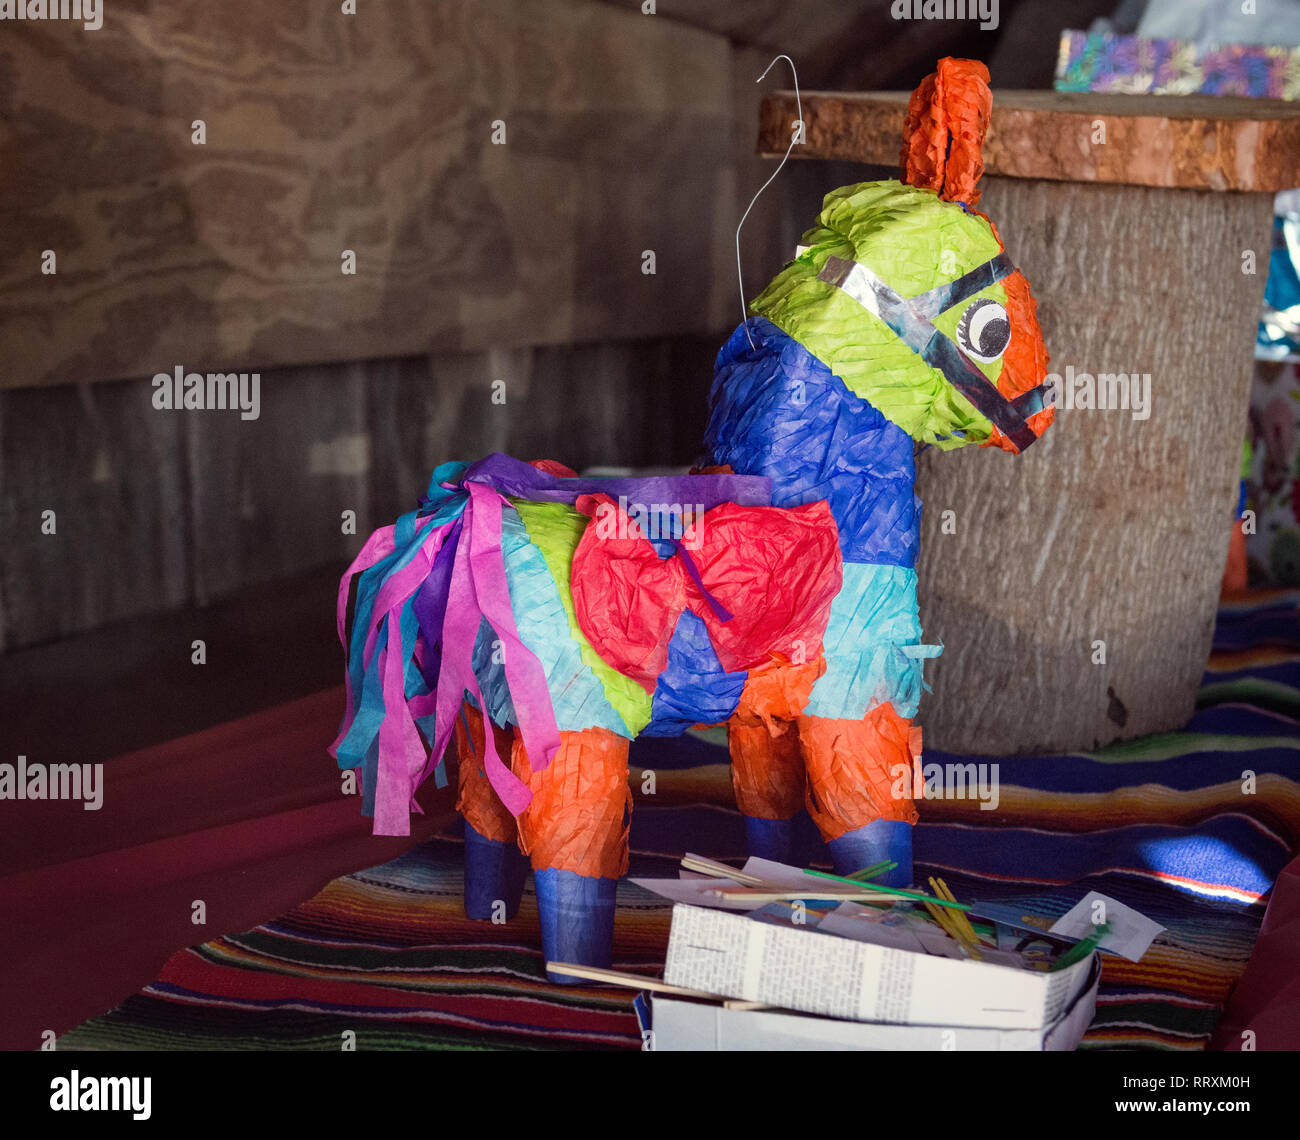 Pinata mexicana con regalos y maracas sobre la mesa Fotografía de stock -  Alamy